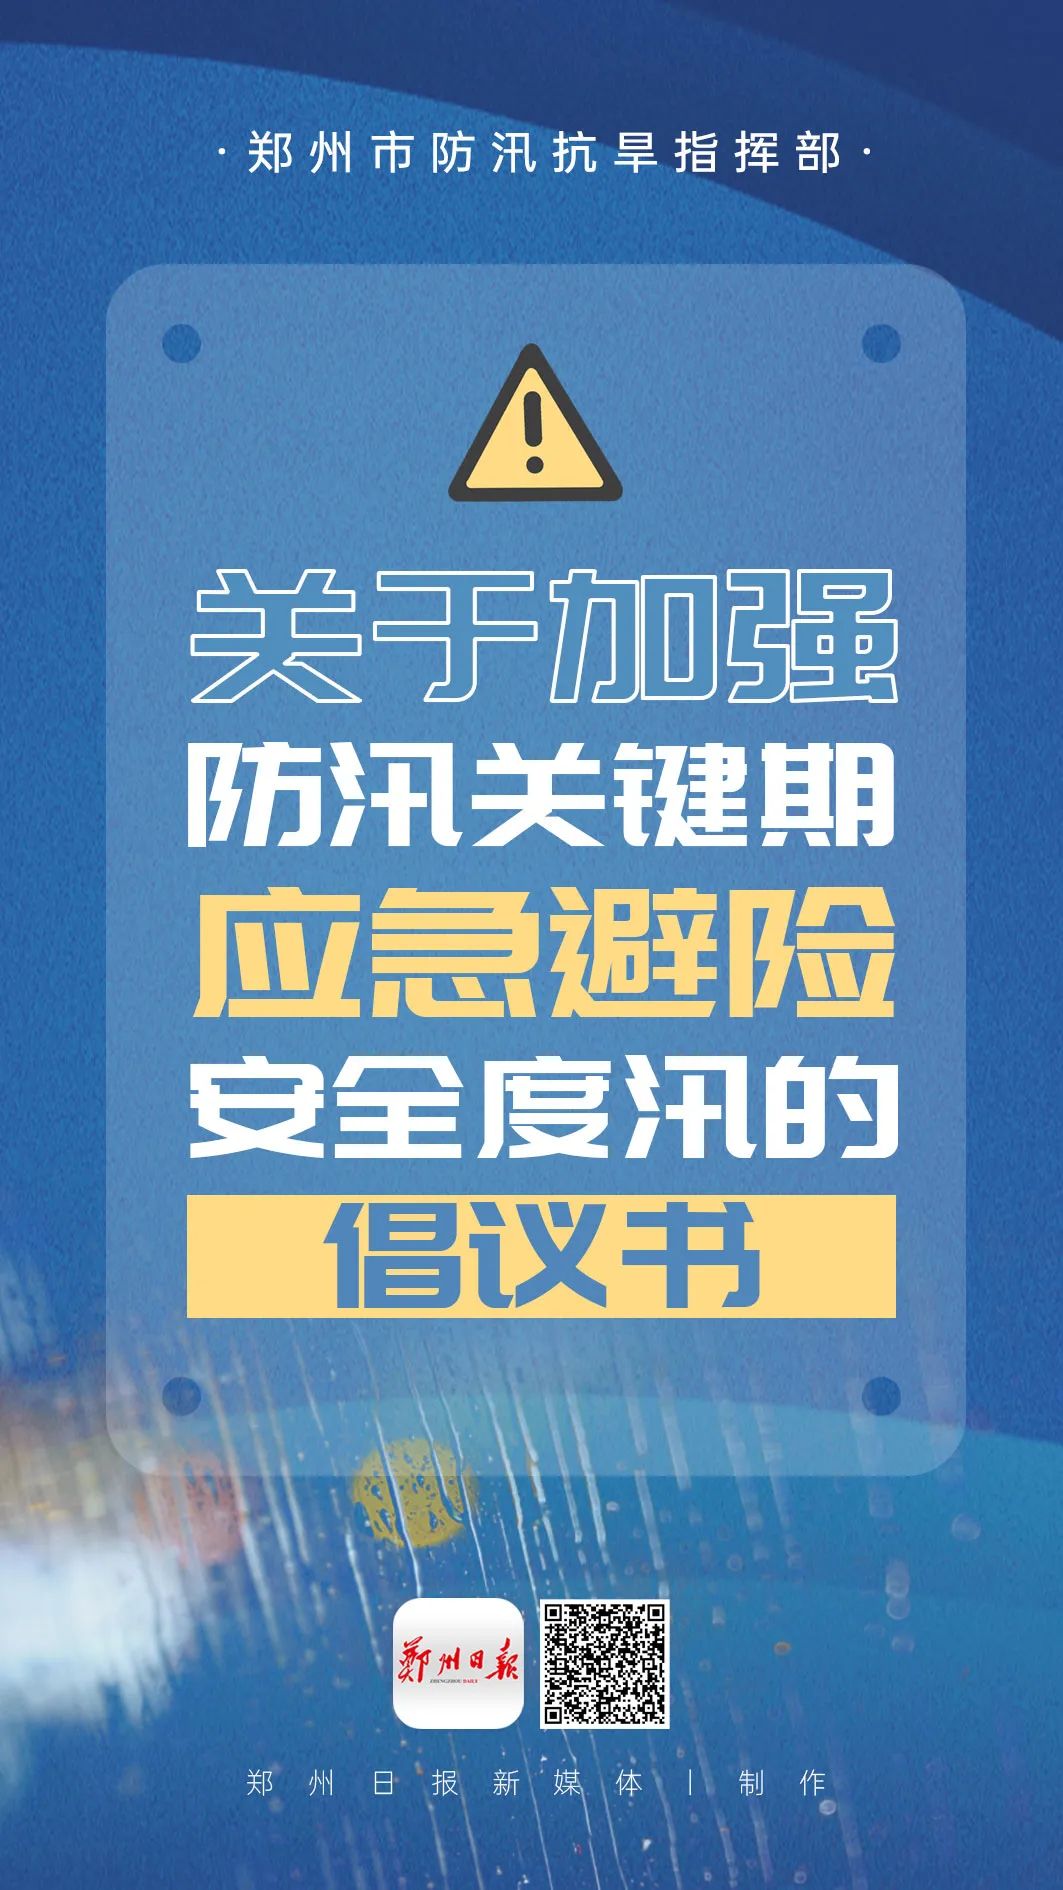 郑州市发布应急避险安全度汛倡议书